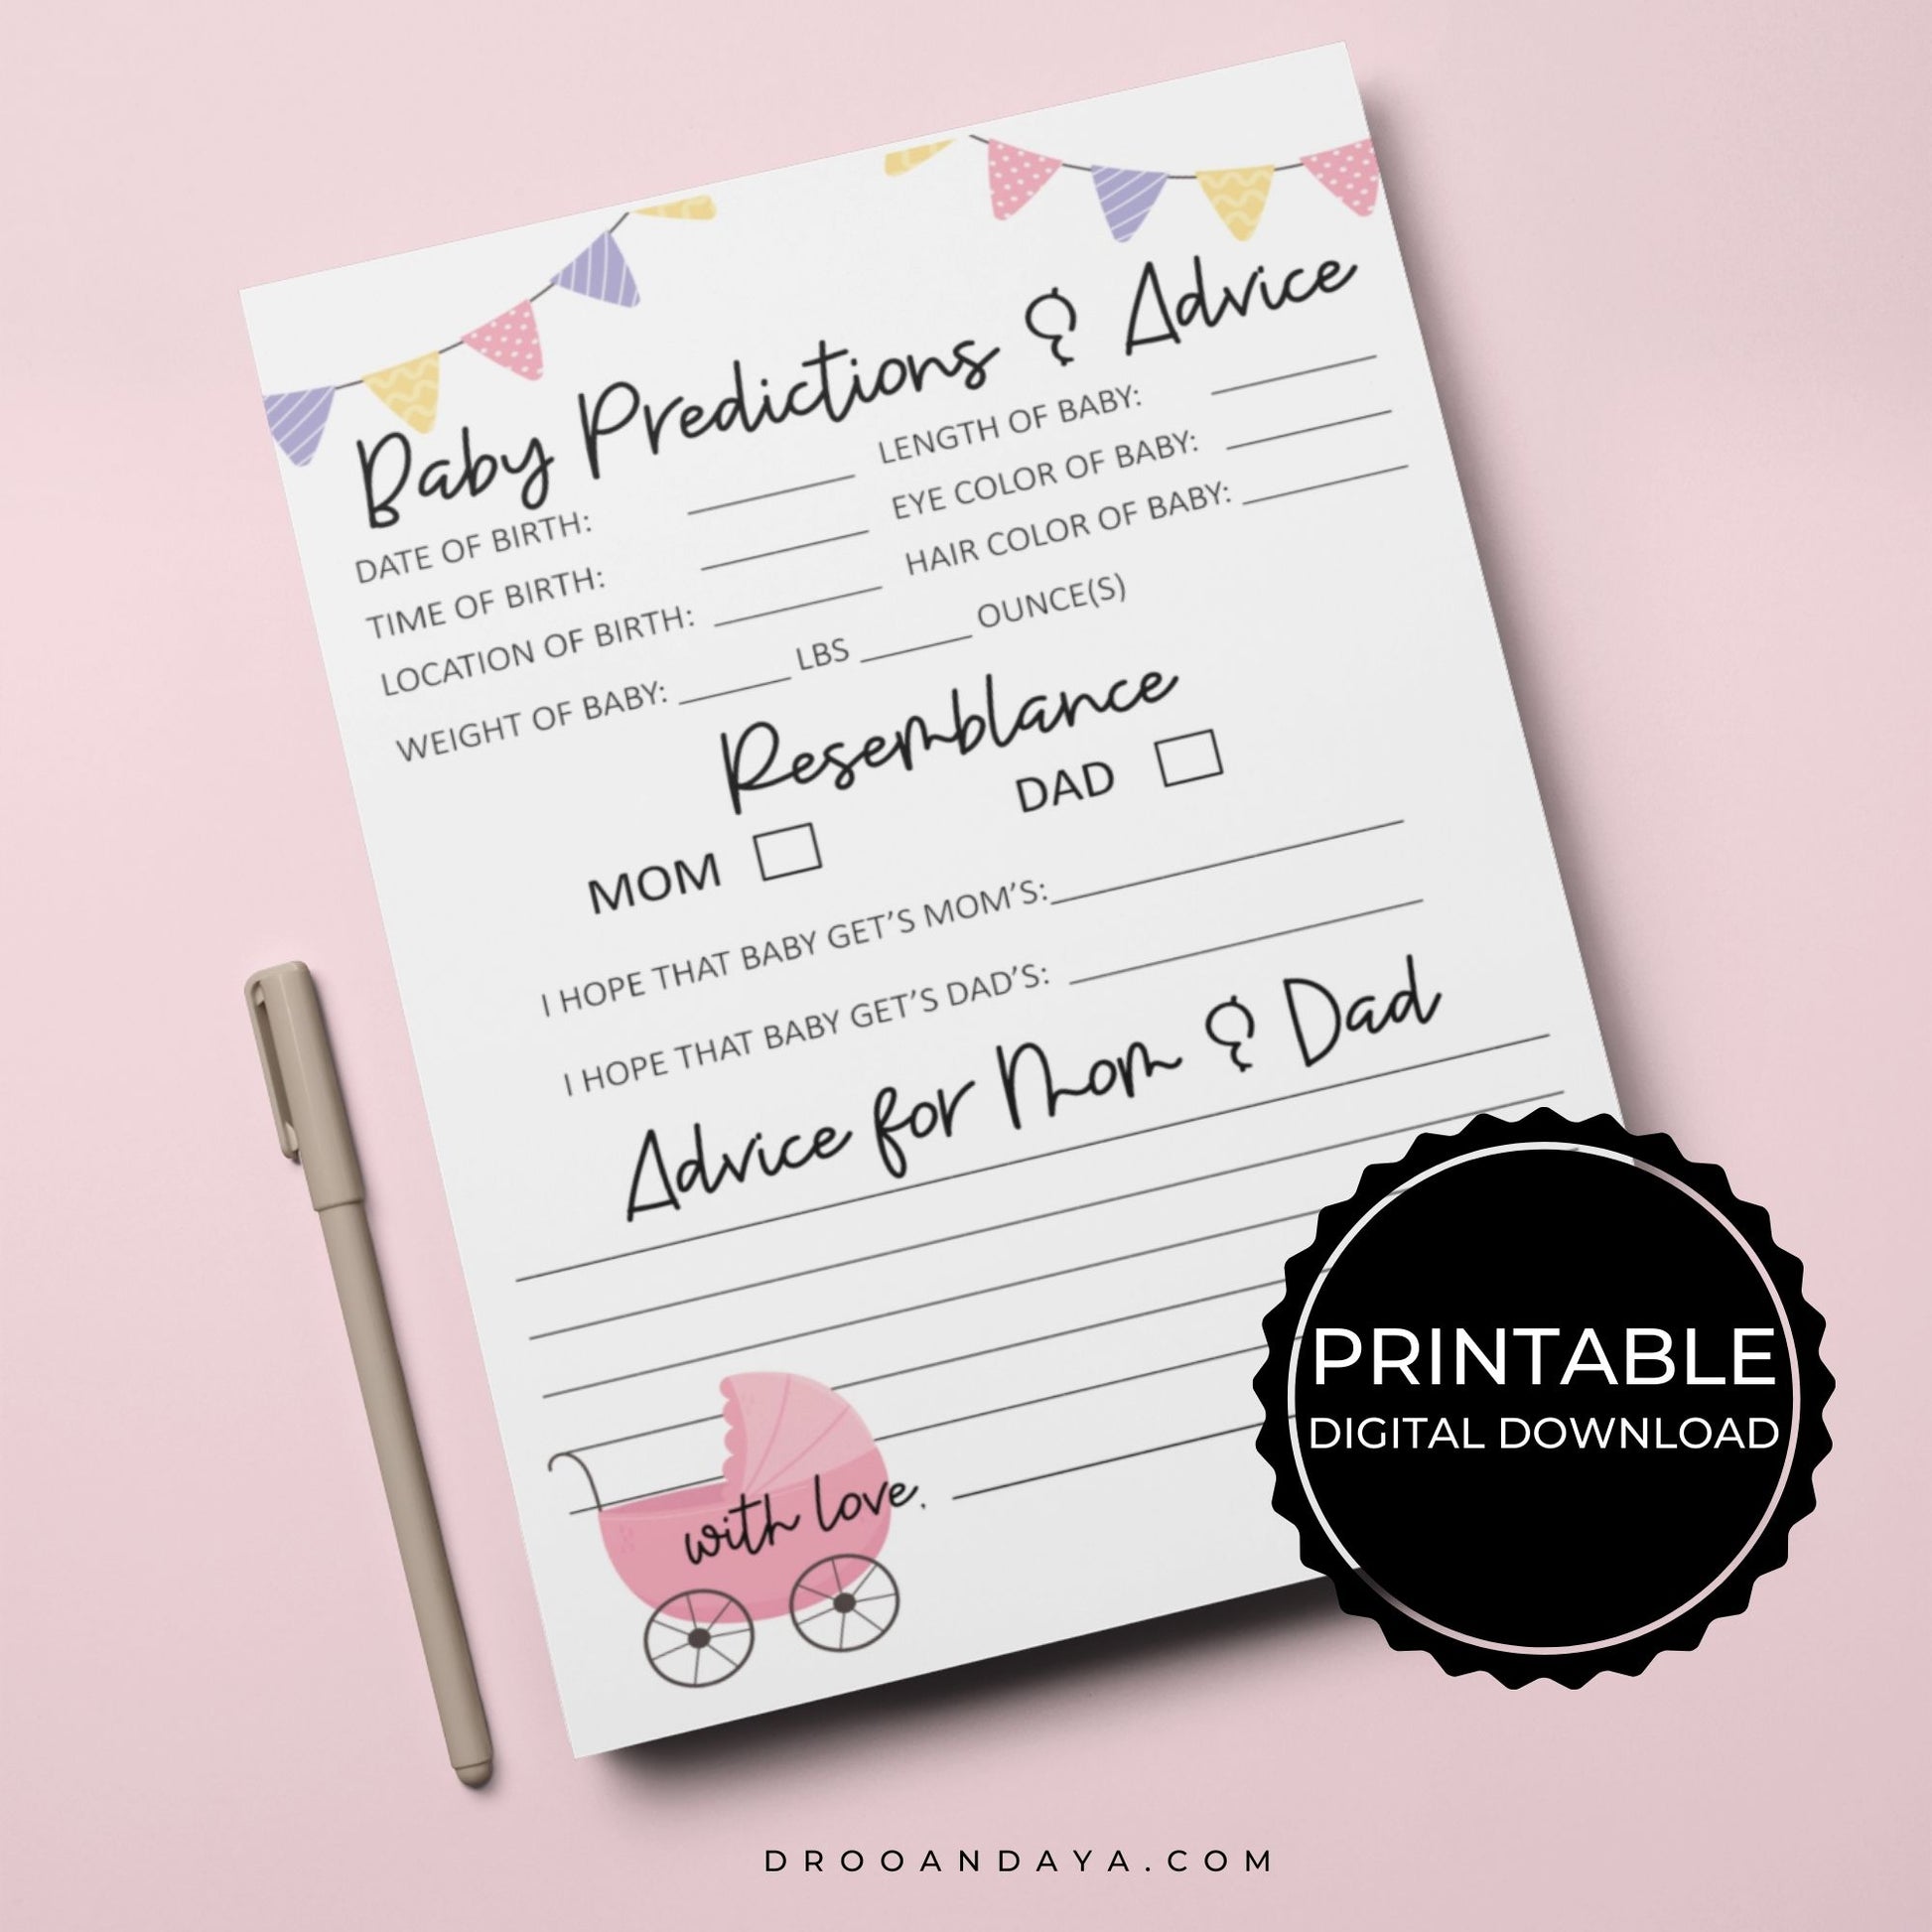 Baby Predictions and Advice Printable - Pink - Droo & Aya